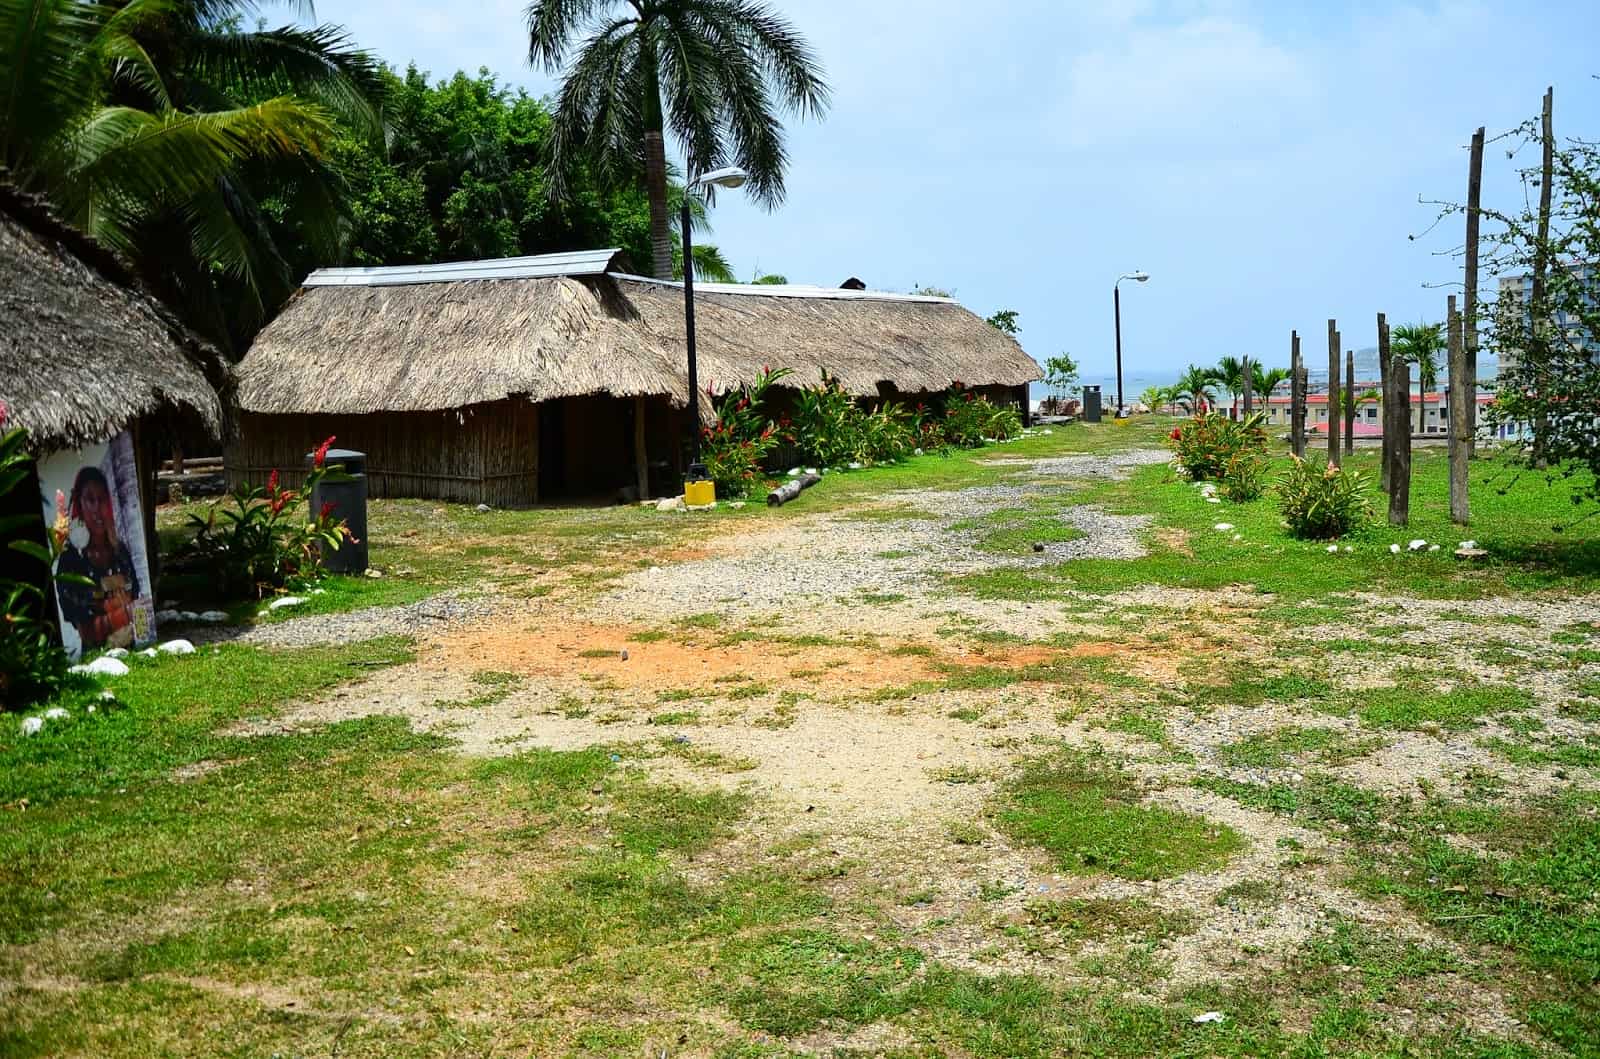 Indigenous village at Mi Pueblito in Panama City